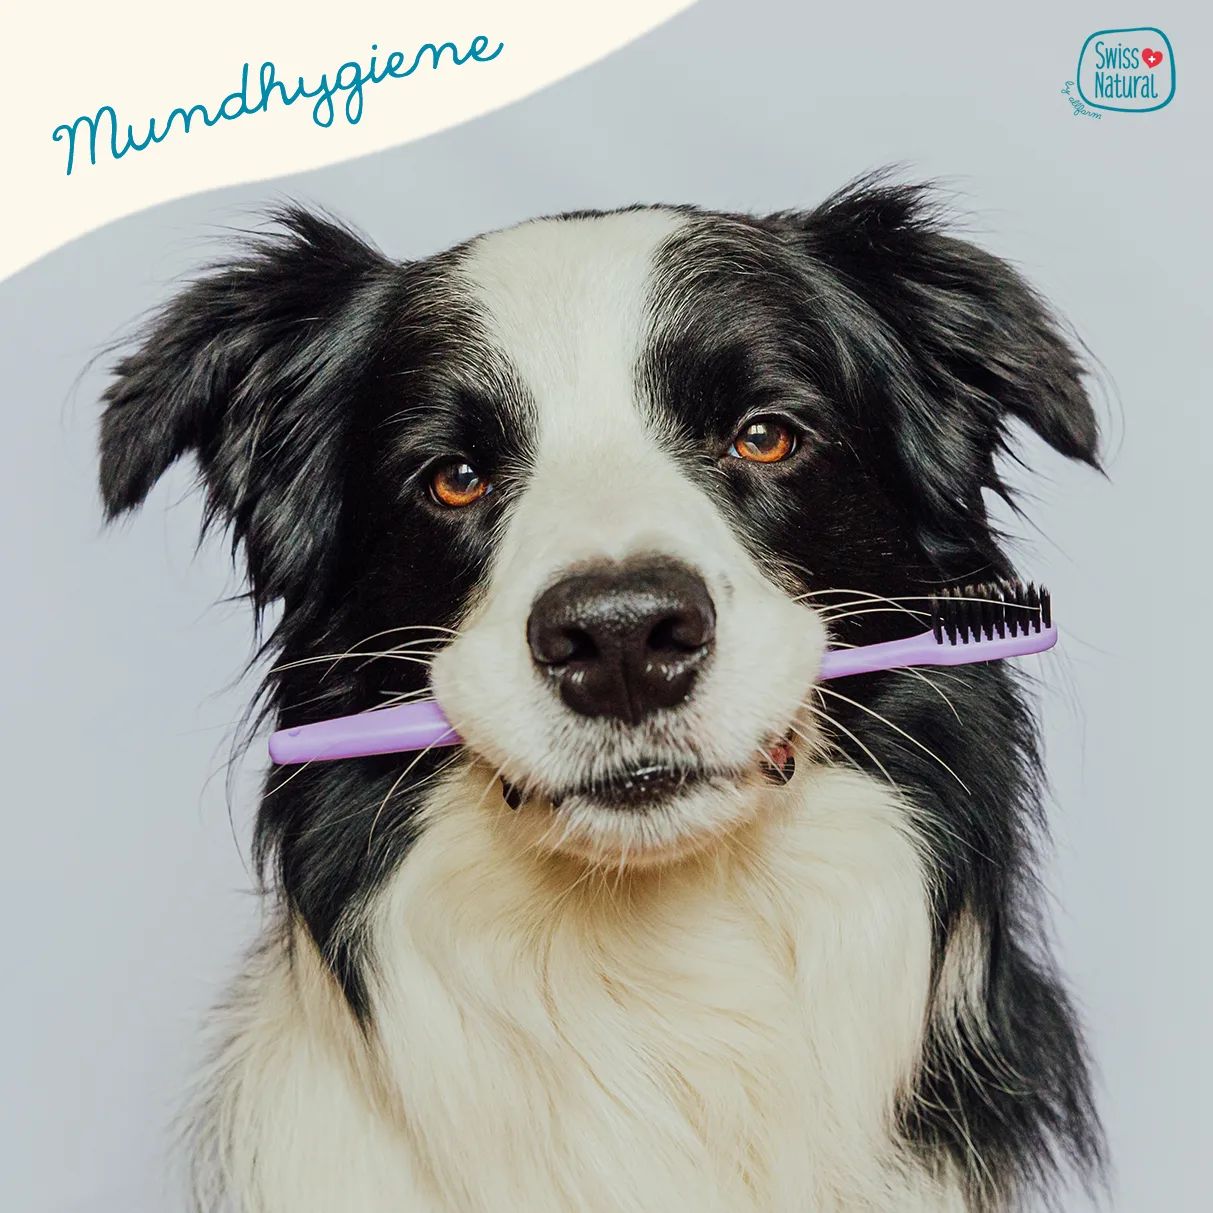 🪥🐶 Mundhygiene 🐶🪥

Ein entscheidender Faktor für die Zahngesundheit des Hundes ist der pH-Wert im Mund. Ein neutraler bis leicht basischer pH-Wert kann das Wachstum von Bakterien, die Zahnstein verursachen, hemmen. Das richtige Futter ist hierbei entscheidend.

Mehr darüber erfahrt ihr in unserem neuen Blogbeitrag - Link in der Bio

Wir sind neugierig - neigen eure Hunde zu Zahnstein?

Stimmt doch ab ⬇️

.
.
.
.
.

#swissnatural #swissnaturalbyallfarm #swissdogfood #swissmade #swiss #swissquality🇨🇭 #schweizerhundefutter #schweizerfleisch #schweizerherkunft #schweizerunternehmen #schweizerqualität #semimoist #softfutter #softeshundefutter #hundefutterausderschweiz #hundefutter #mundhygiene #mundhygienebeimhund #hundezahnpflege #zähne #hundezähneputzen #blogbeitrag #blogbeiträge

Neigen eure Hunde zu Zahnstein?